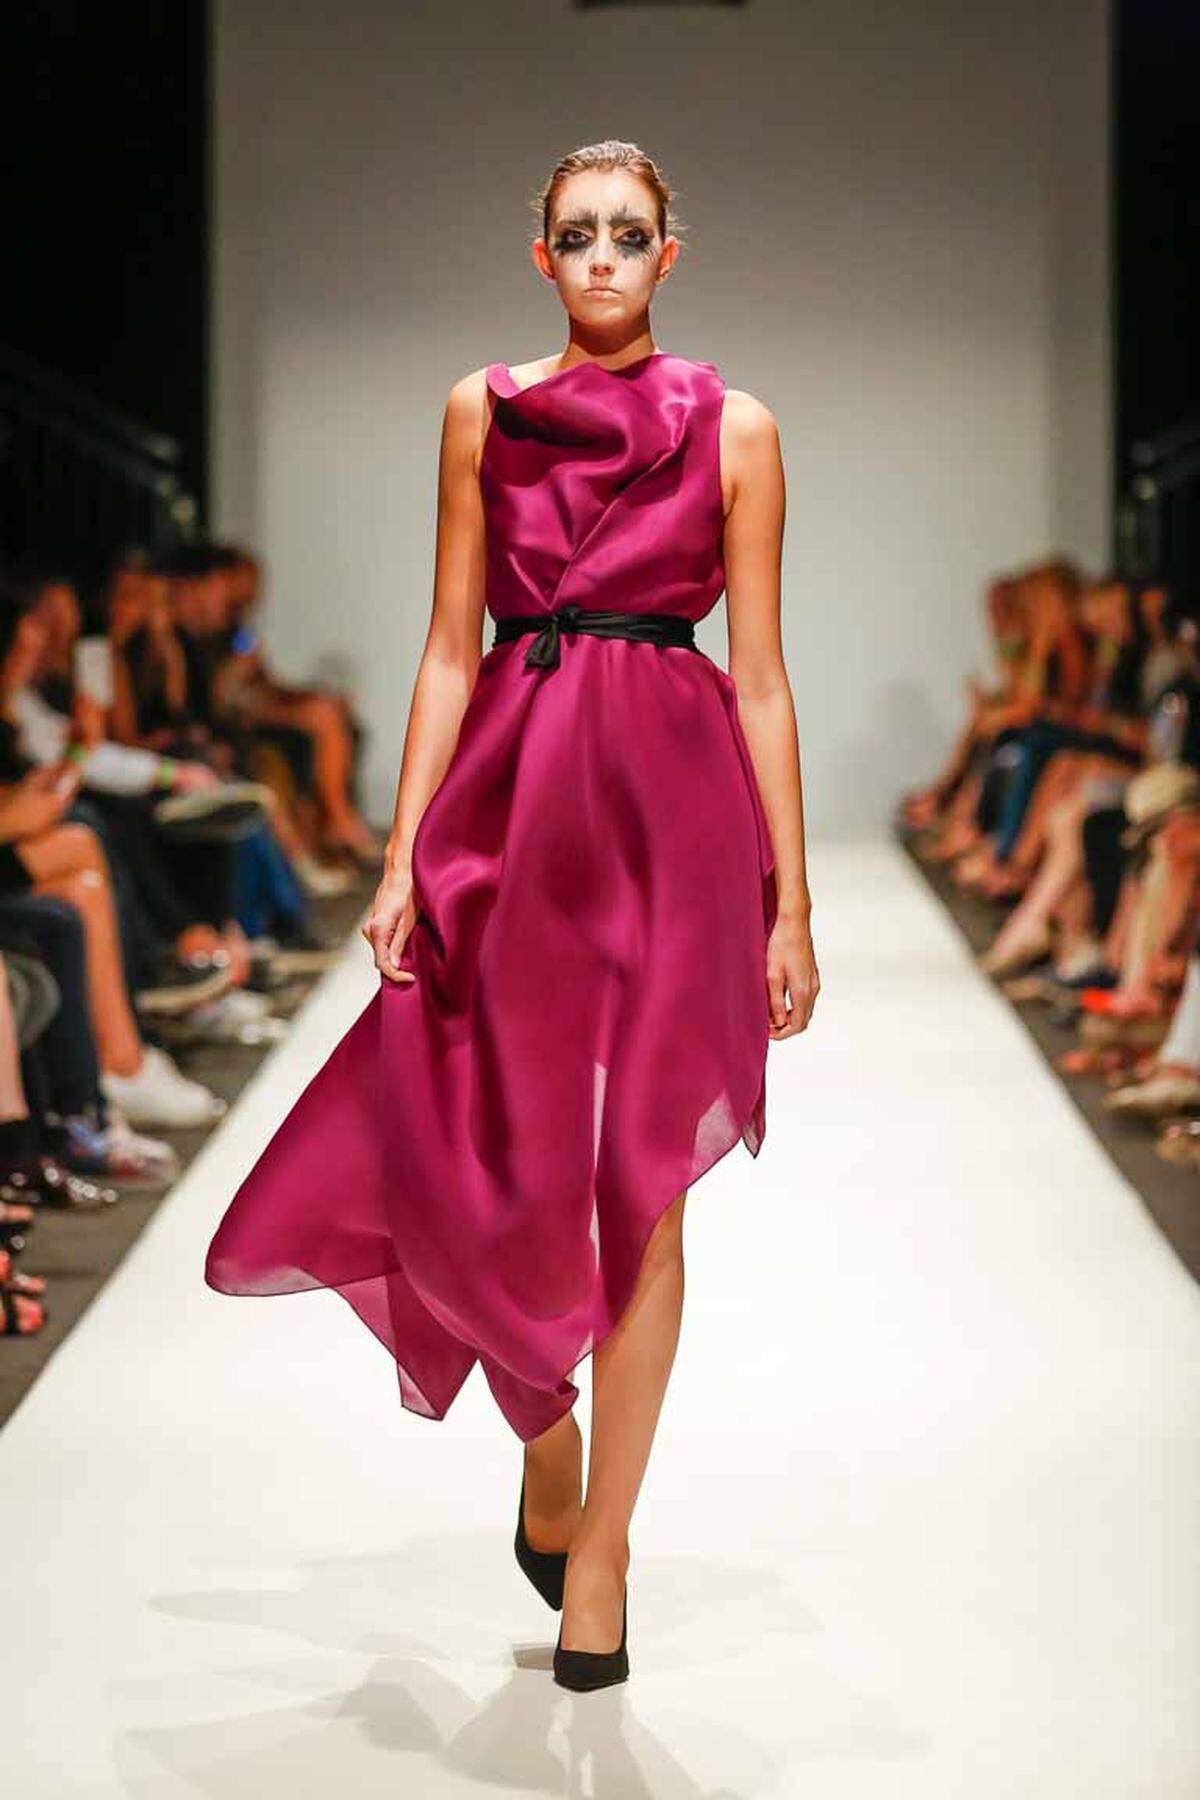 Der US-amerikanische Modedesigner Kithe Brewster war zuvor als Star-Stylist tätig und zeigte in Wien seine neuen Entwürfe unter dem Namen "Brids Two".